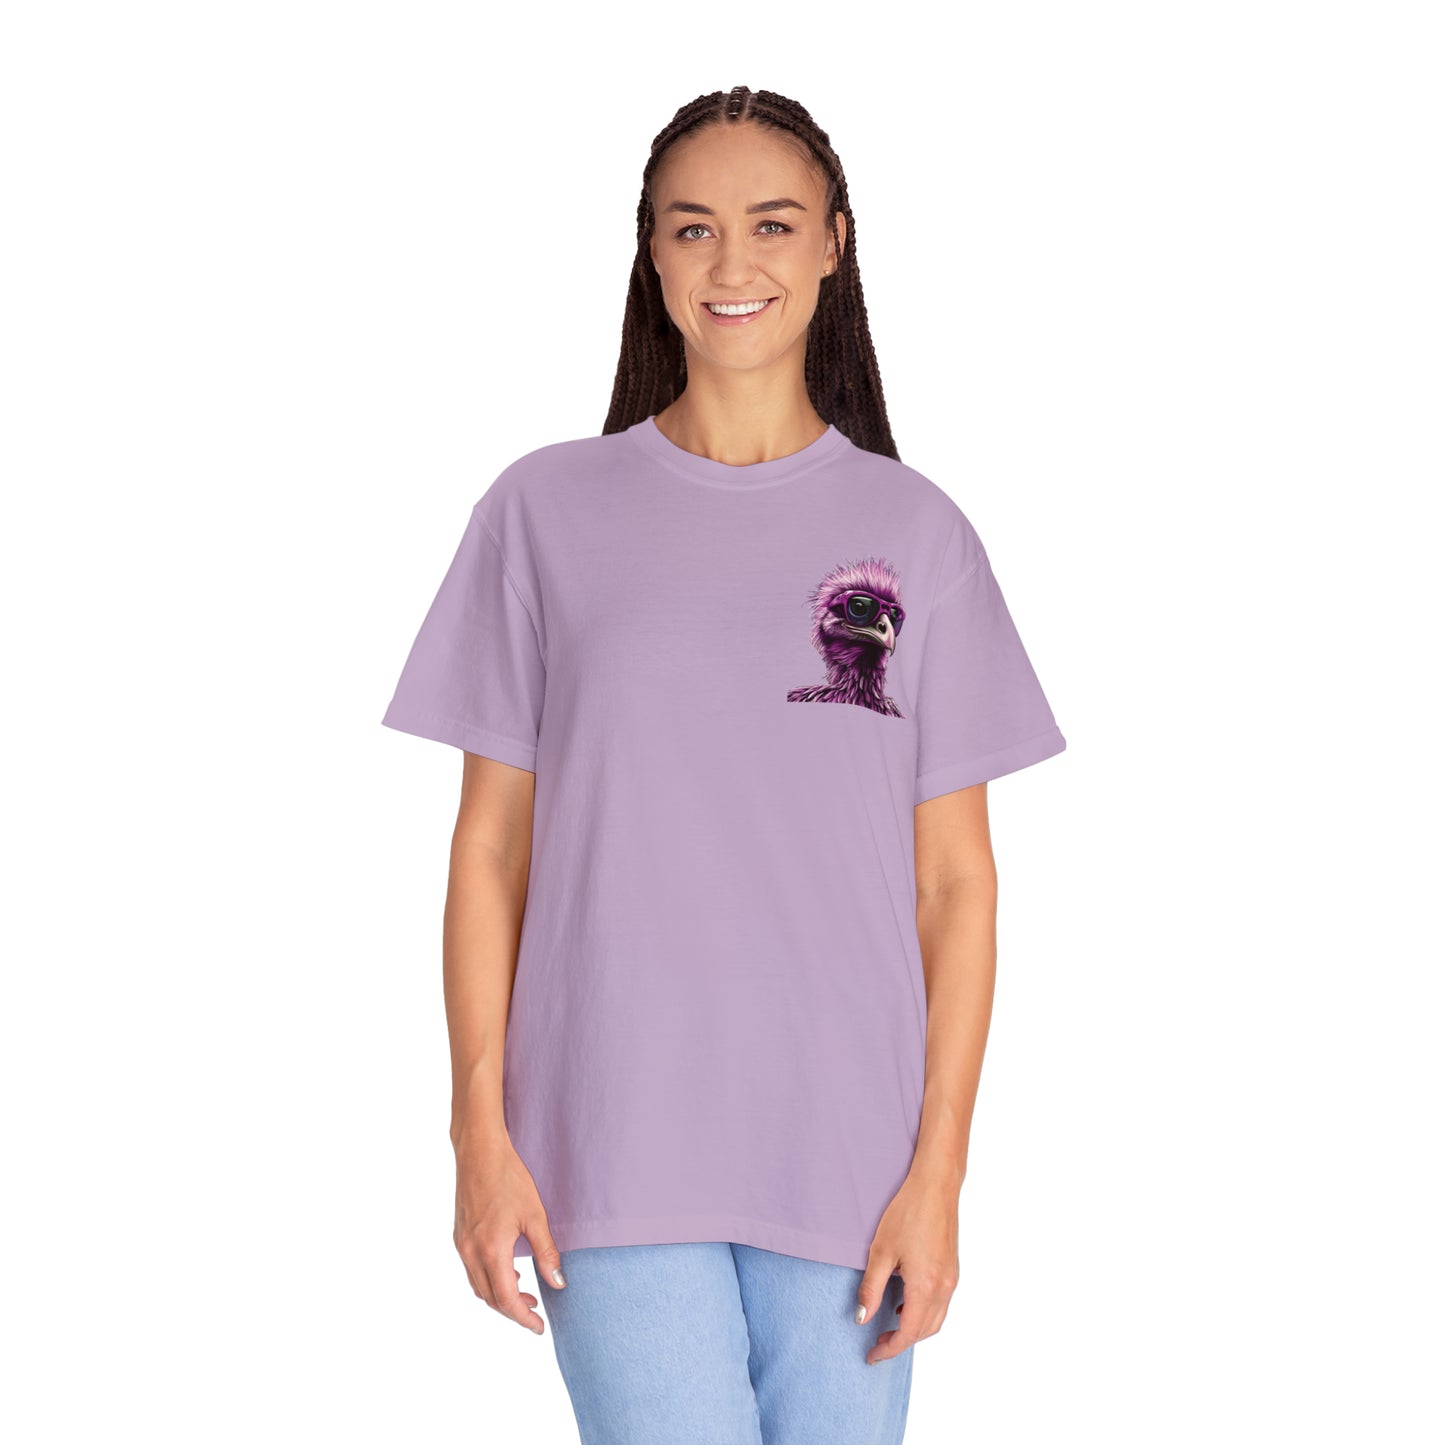 Nostrich Unisex Garment-Dyed T-shirt